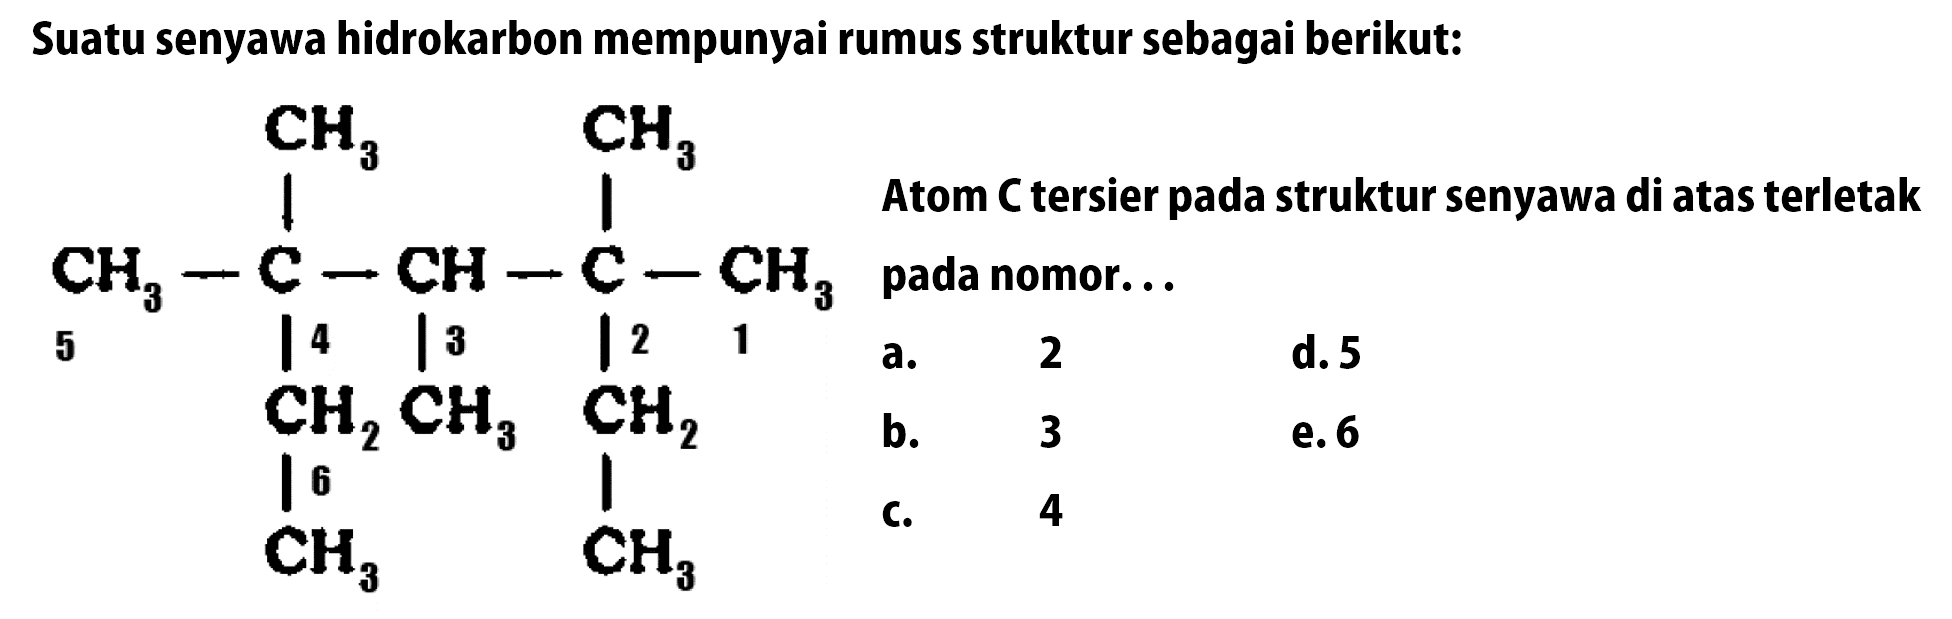 Suatu senyawa hidrokarbon mempunyai rumus struktur sebagai berikut: CH3 CH3 CH3 - C - CH - C - CH3 - CH2 CH3 CH2 CH3 CH3 Atom C tersier pada struktur senyawa di atas terletak pada nomor ...